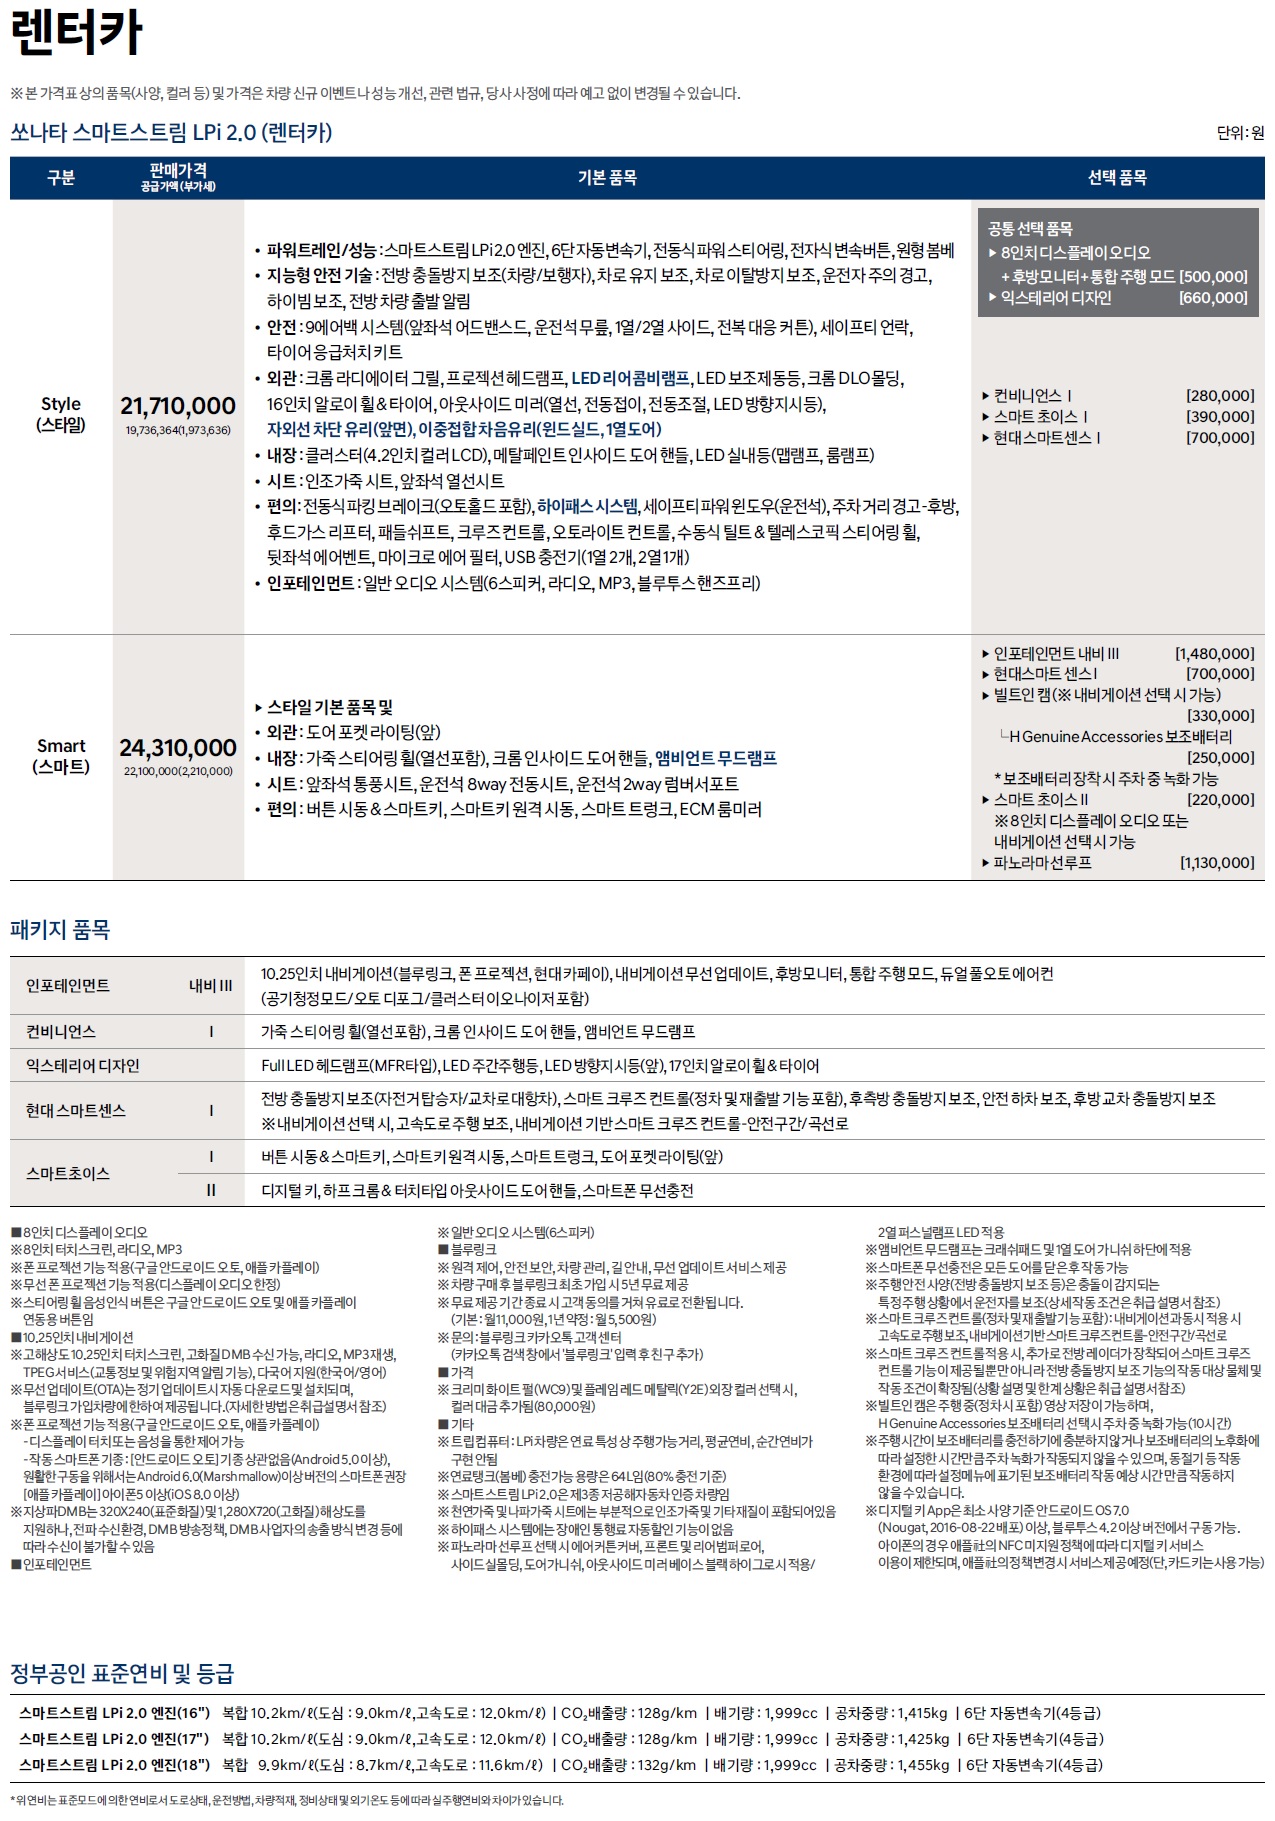 쏘나타 가격표 - 2022년 07월 (2023년형) -7.jpg